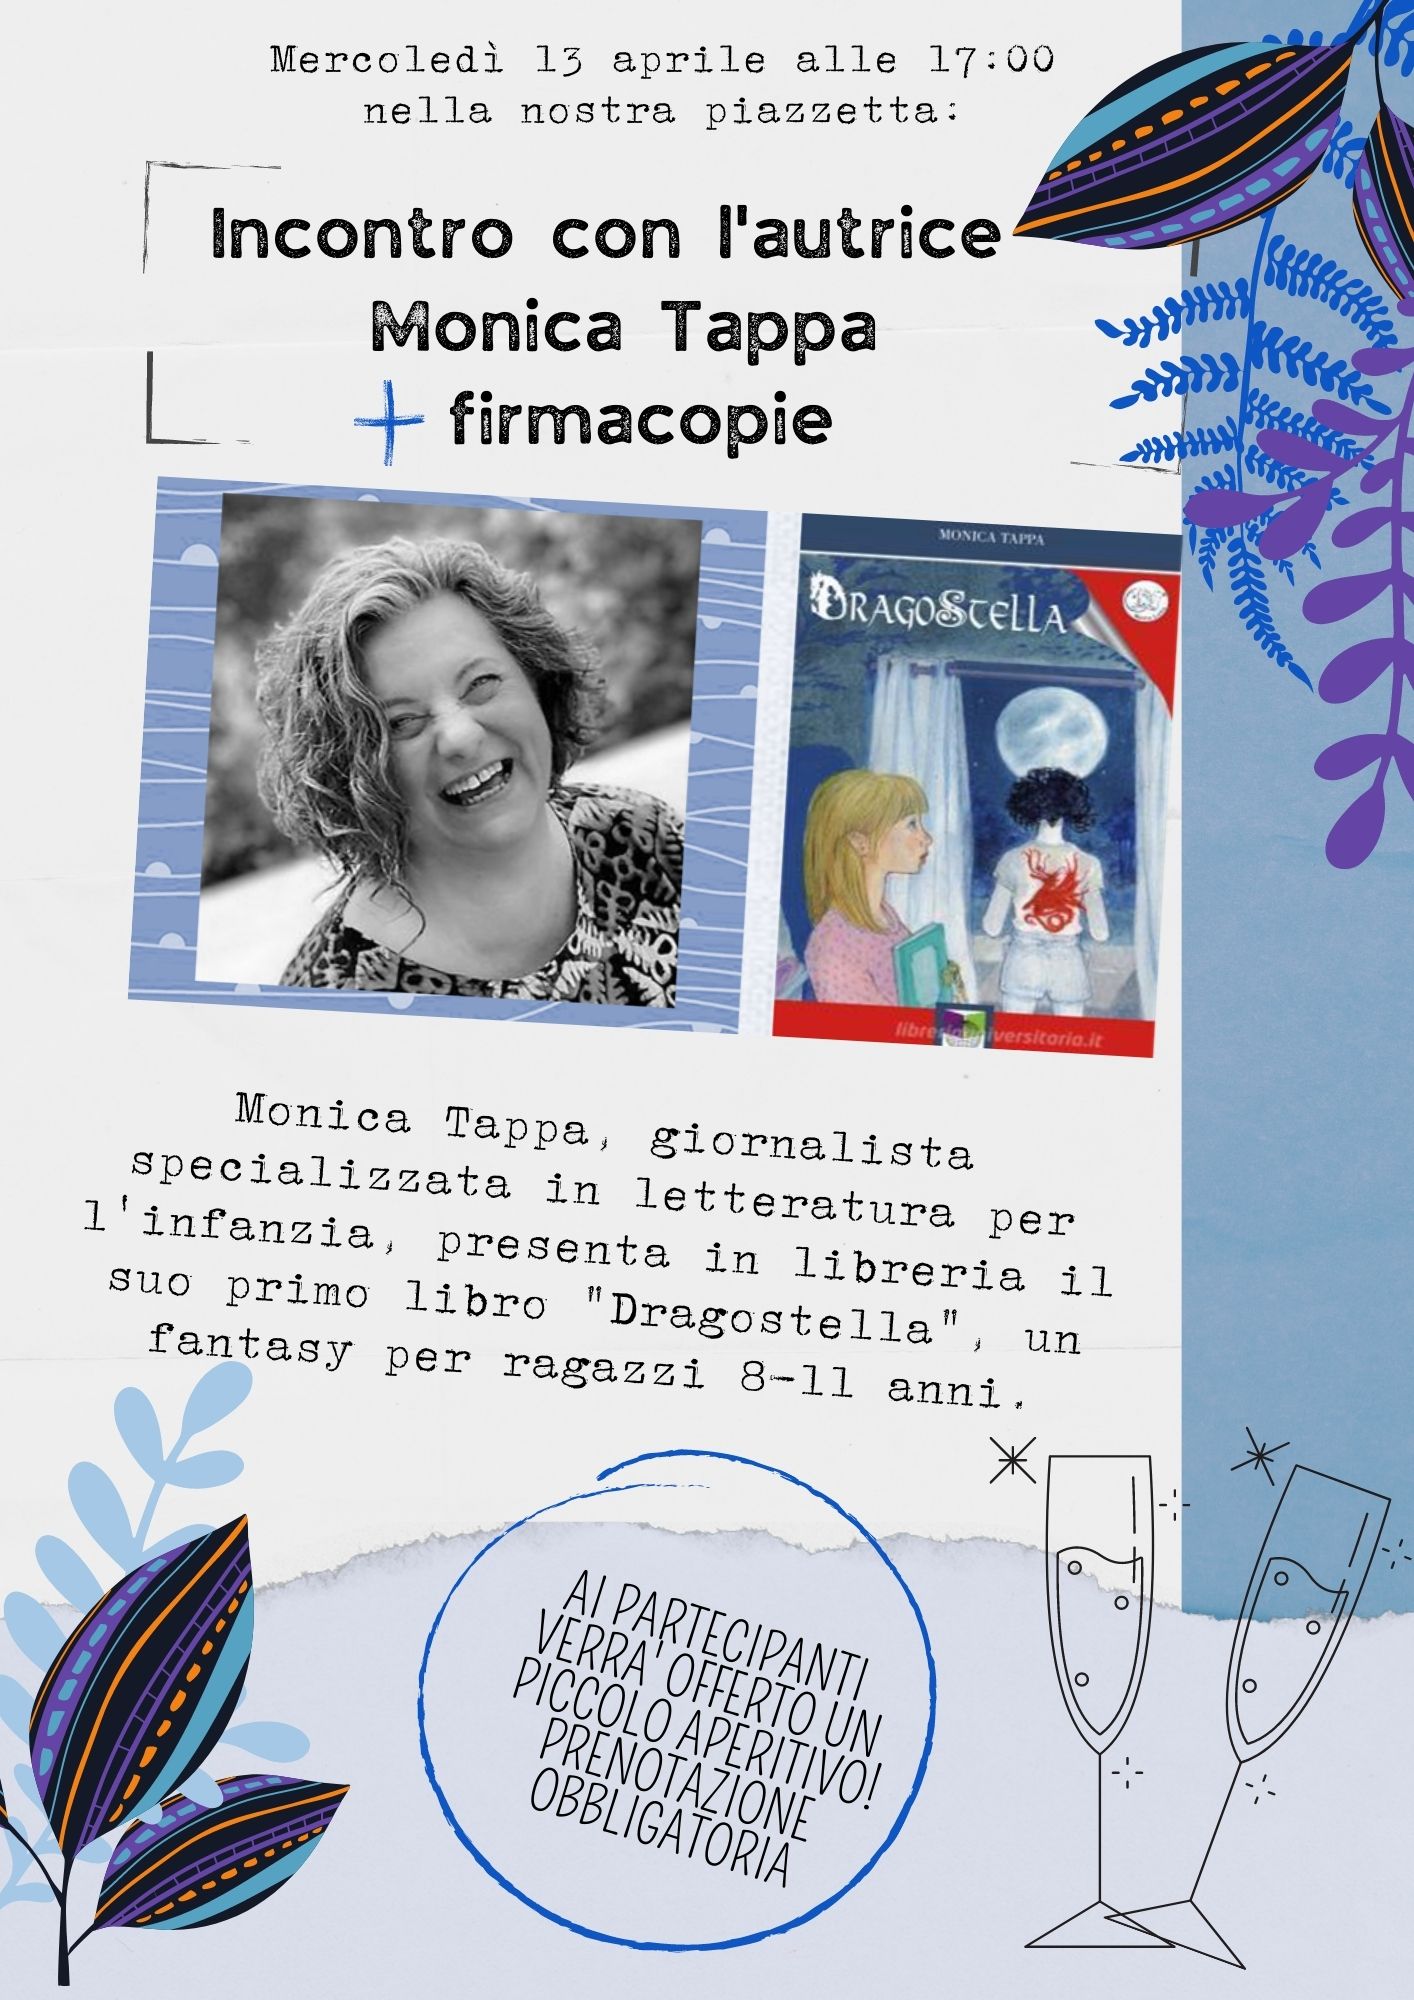 Mercoledì 13 Presentazione del libro “Dragostella” con l’autrice Monica Tappa